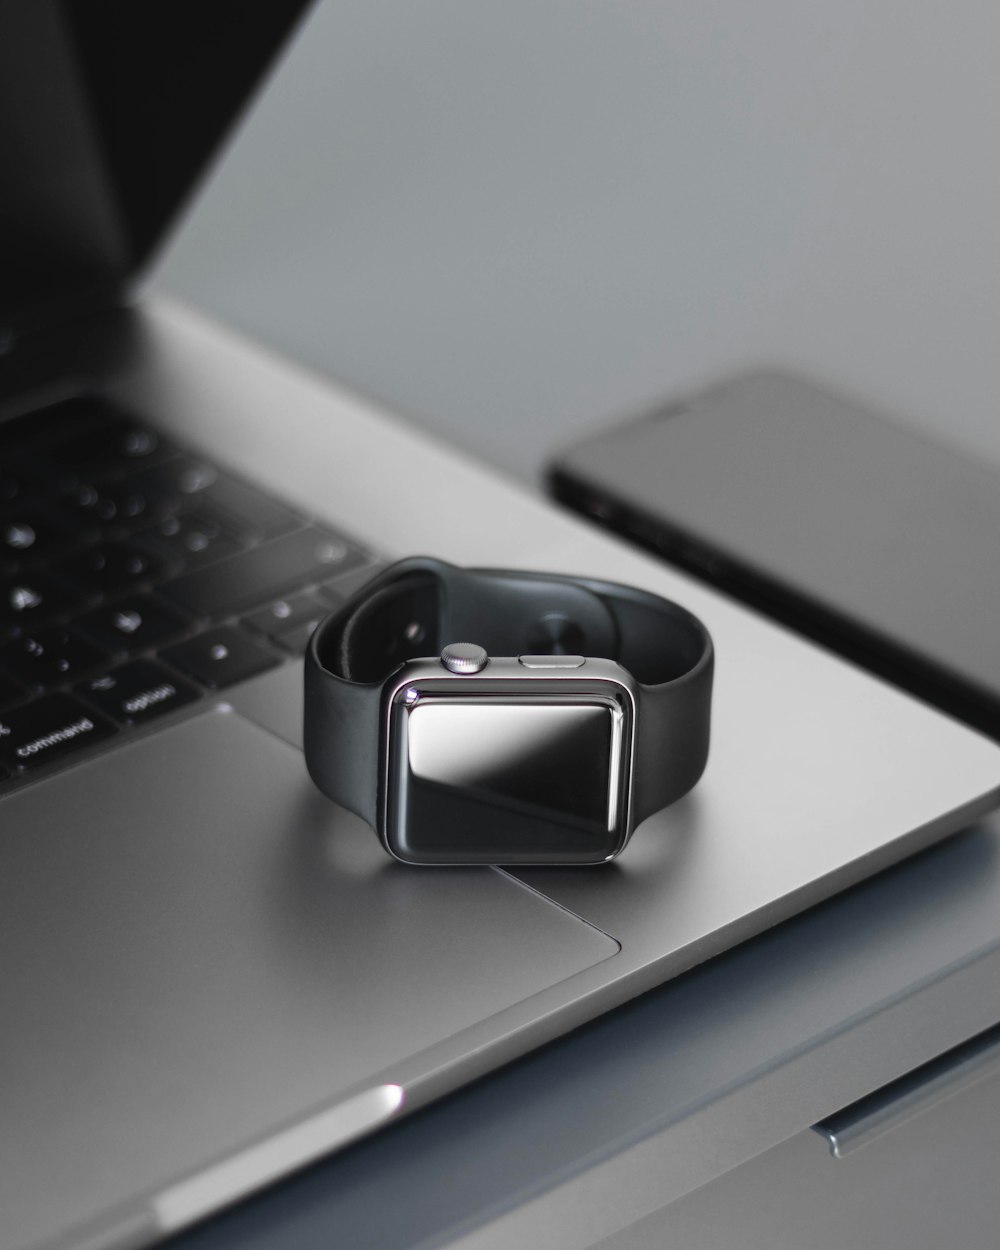 Silberne Smartwatch auf silbernem Laptop